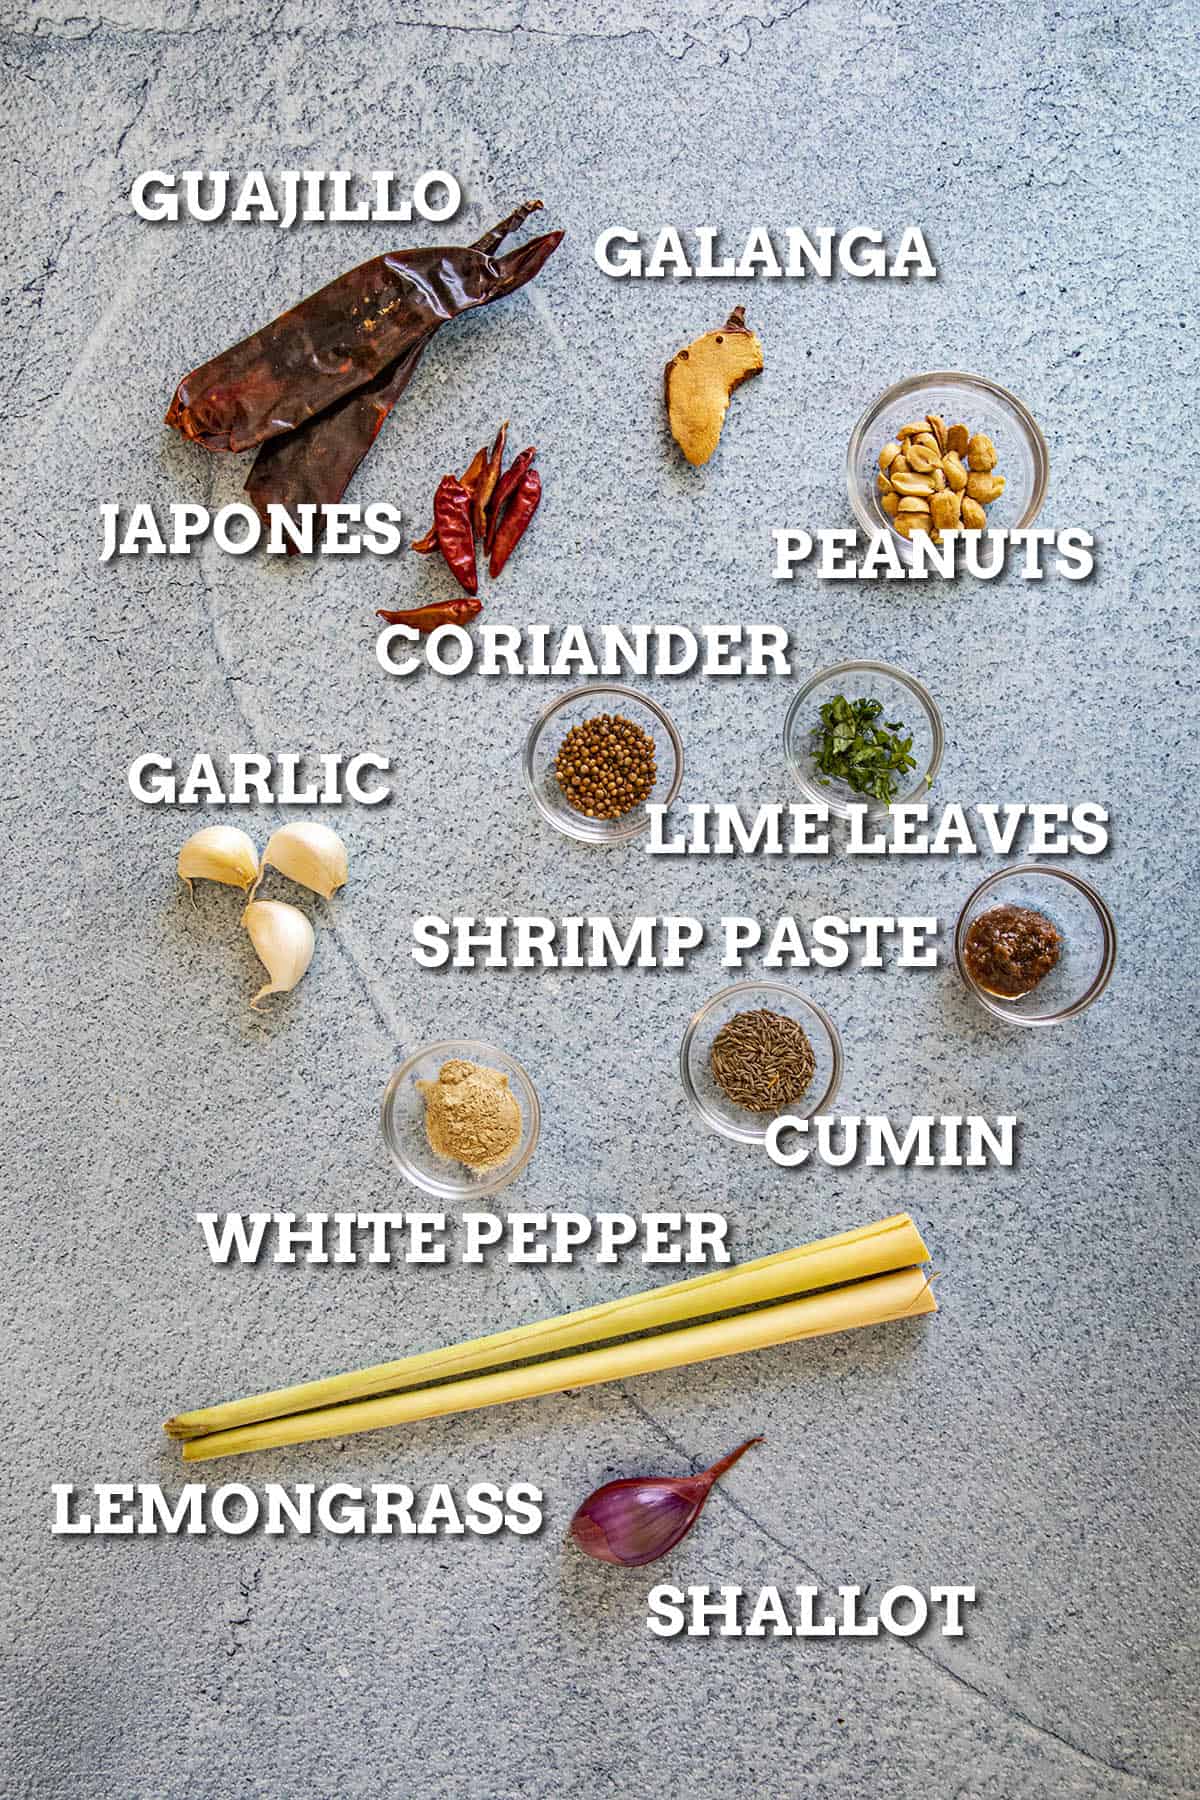 Panang Curry Paste ingredients